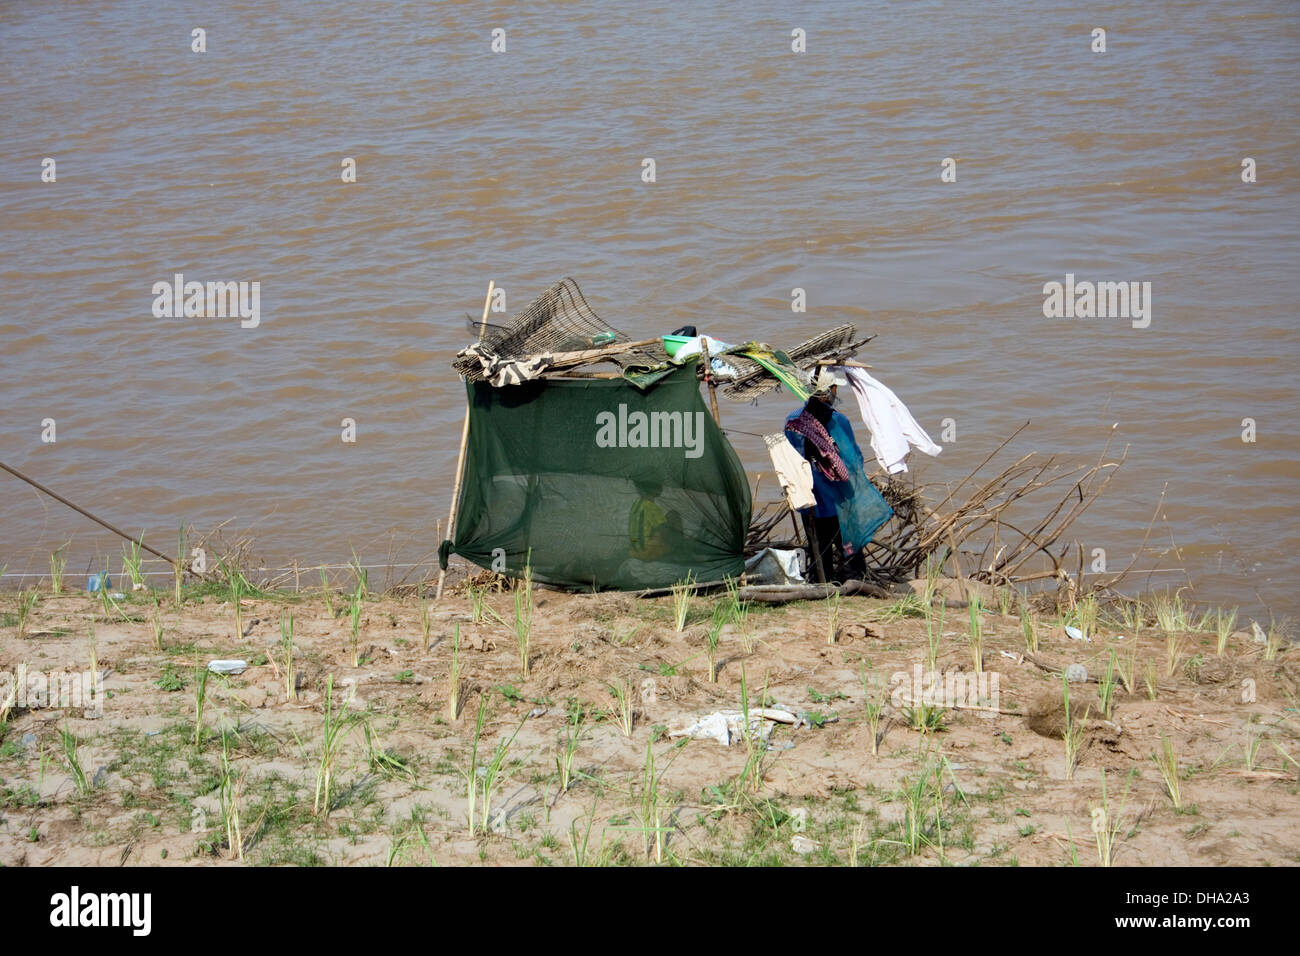 Un abri de fortune utilisés par les pêcheurs se dresse sur la rive du Mékong dans la région de Kampong Cham, au Cambodge. Banque D'Images